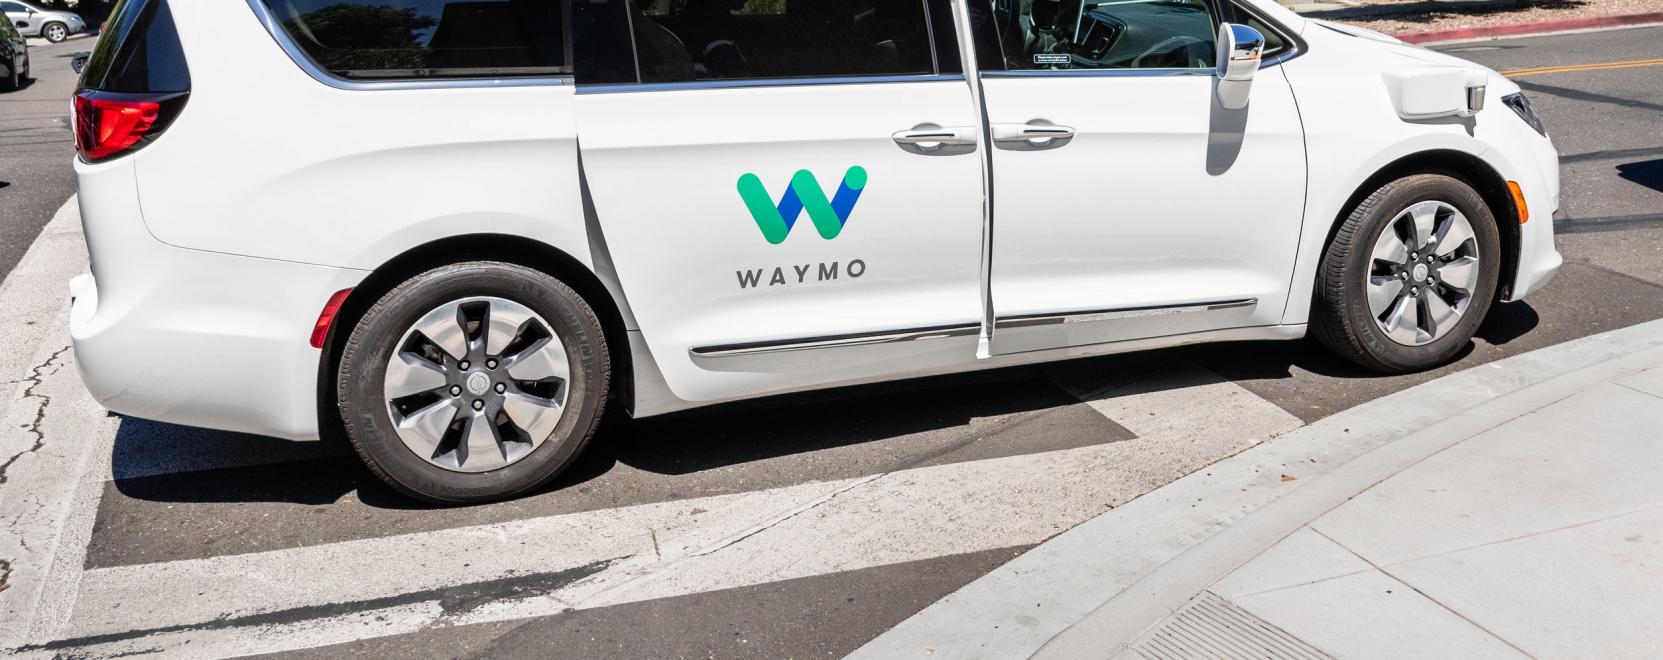 Falják a mérföldeket a Waymo önvezető autói